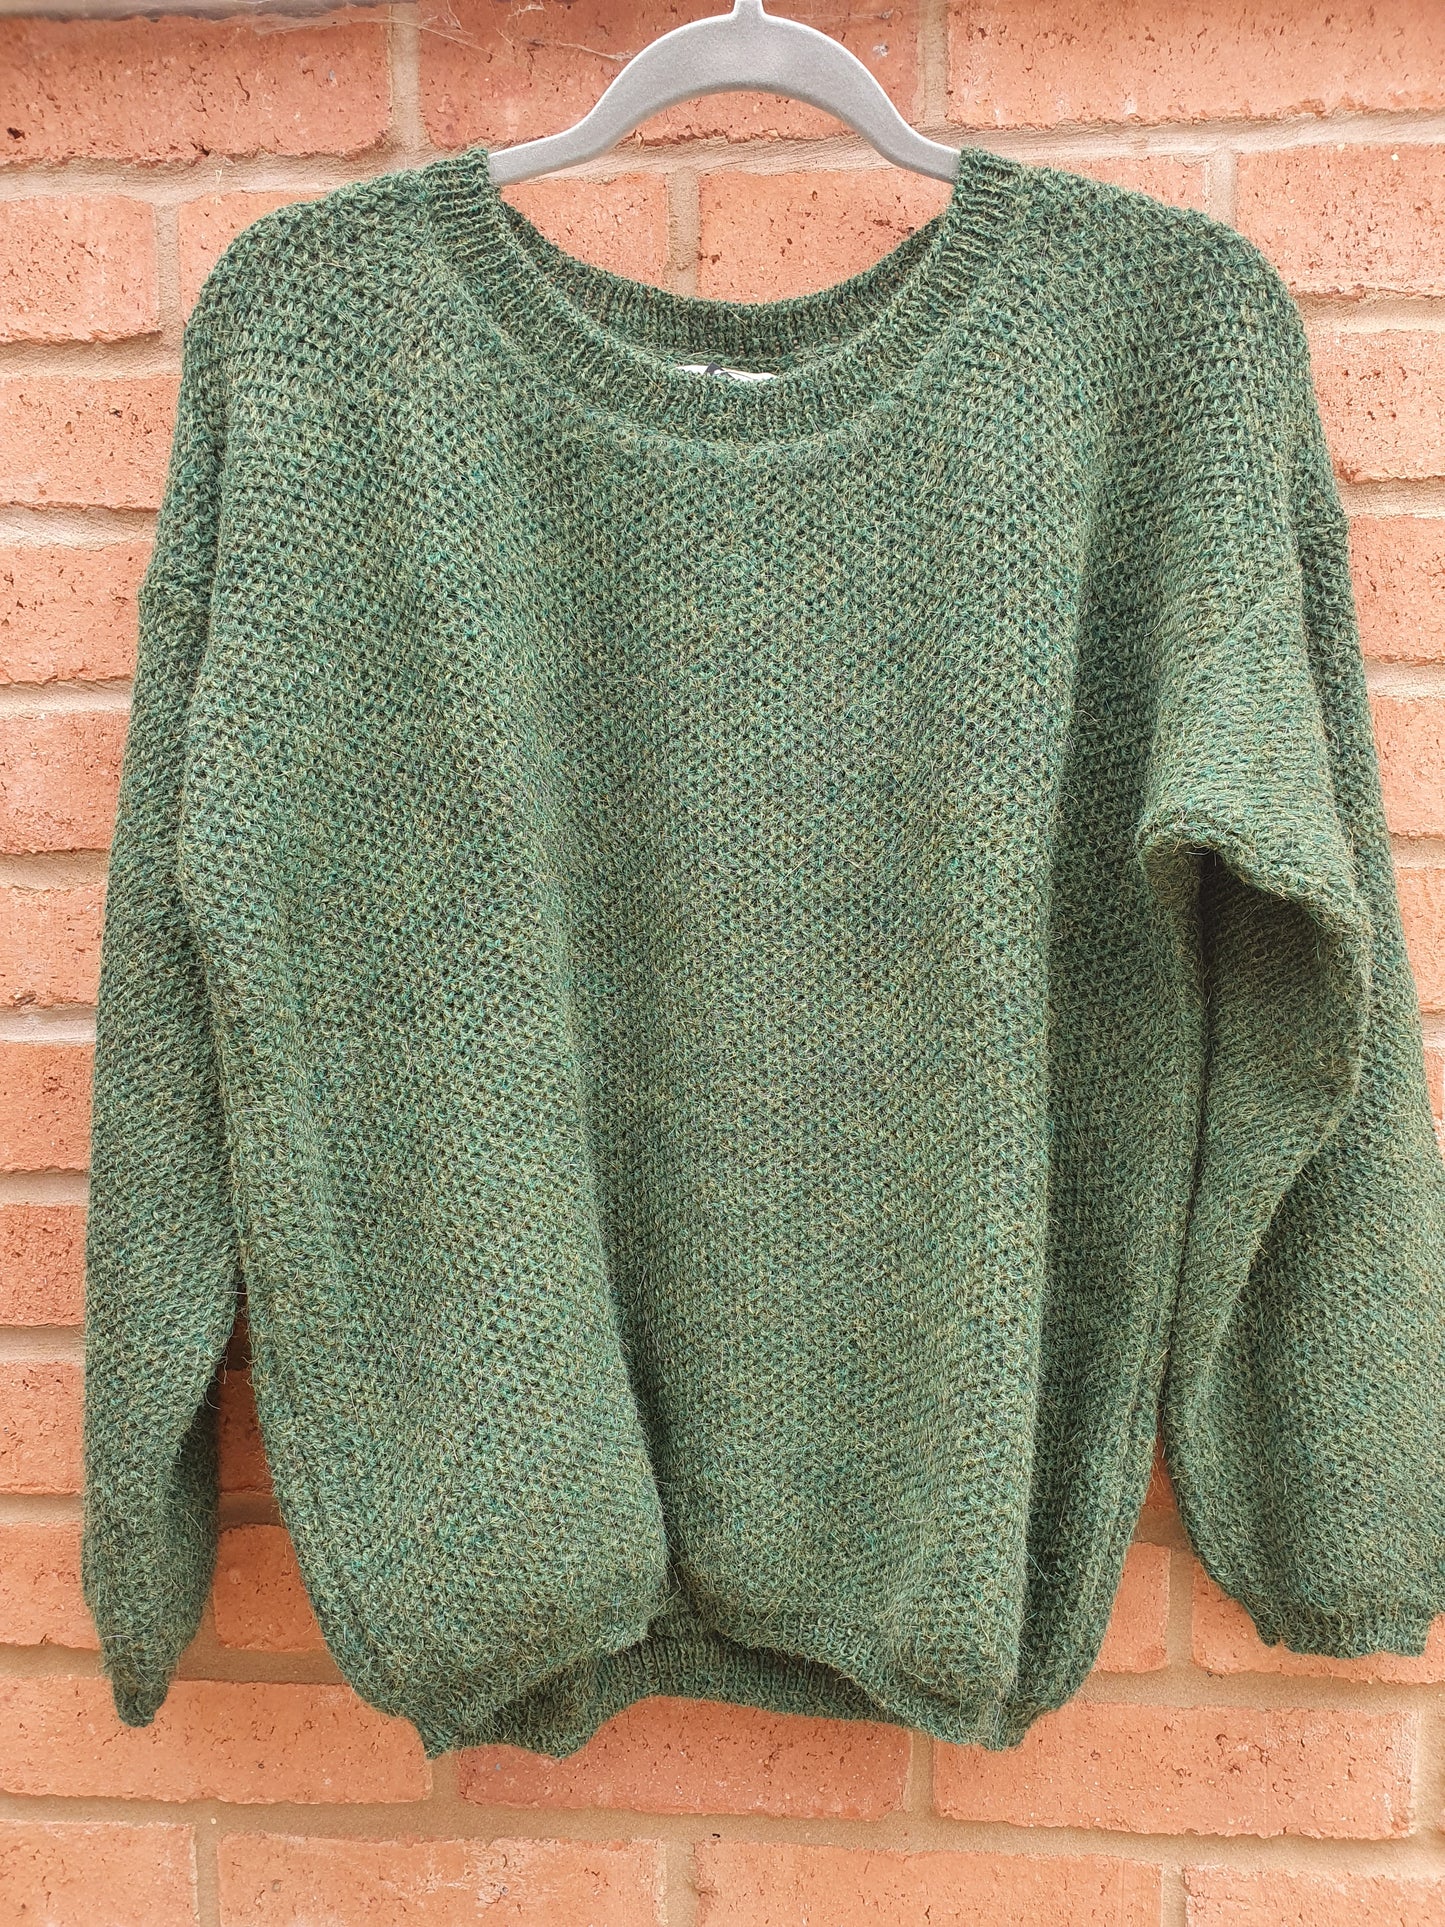 Boxy jumper, chunky knit